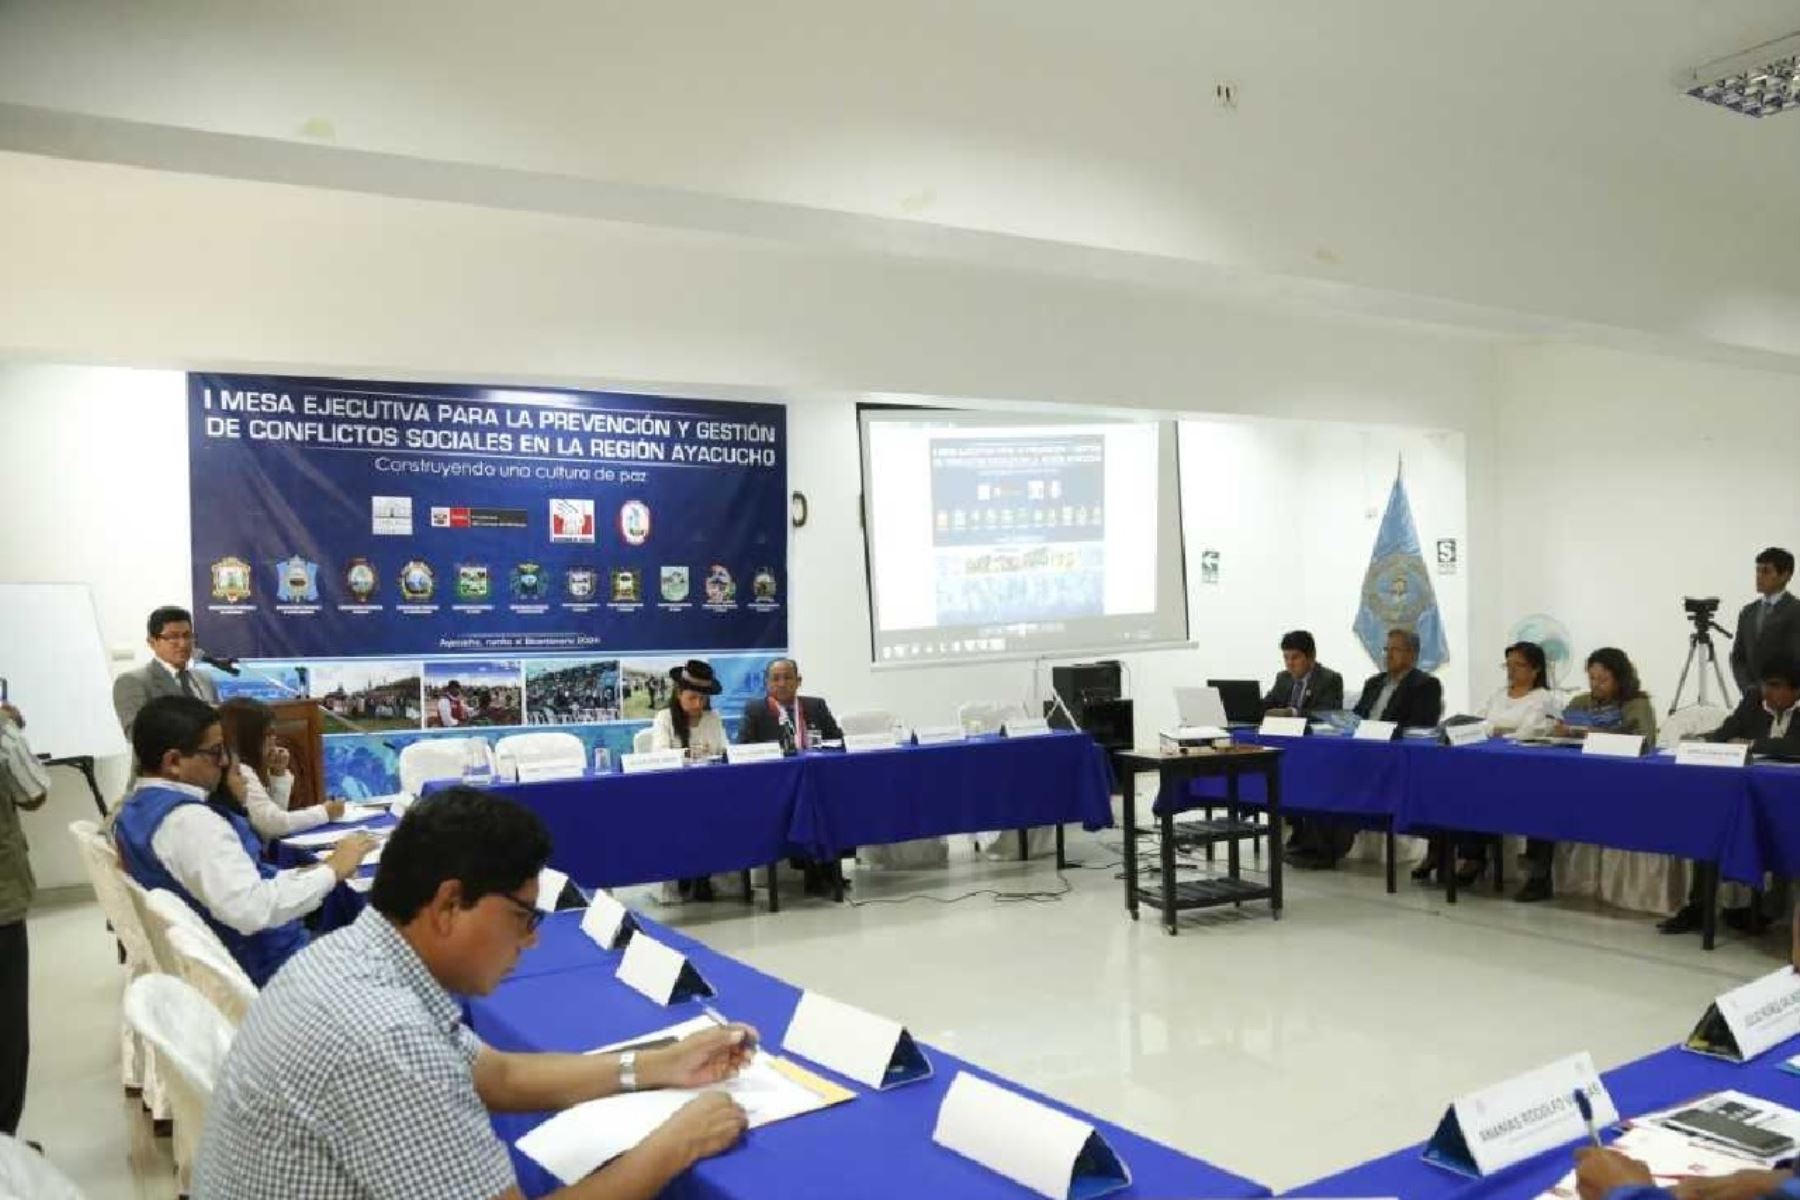 l Mesa Ejecutiva para la Prevención y Gestión de Conflictos Sociales en su jurisdicción, la inauguró  el vicegobernador regional, Víctor De la Cruz. Eyzaguirre.